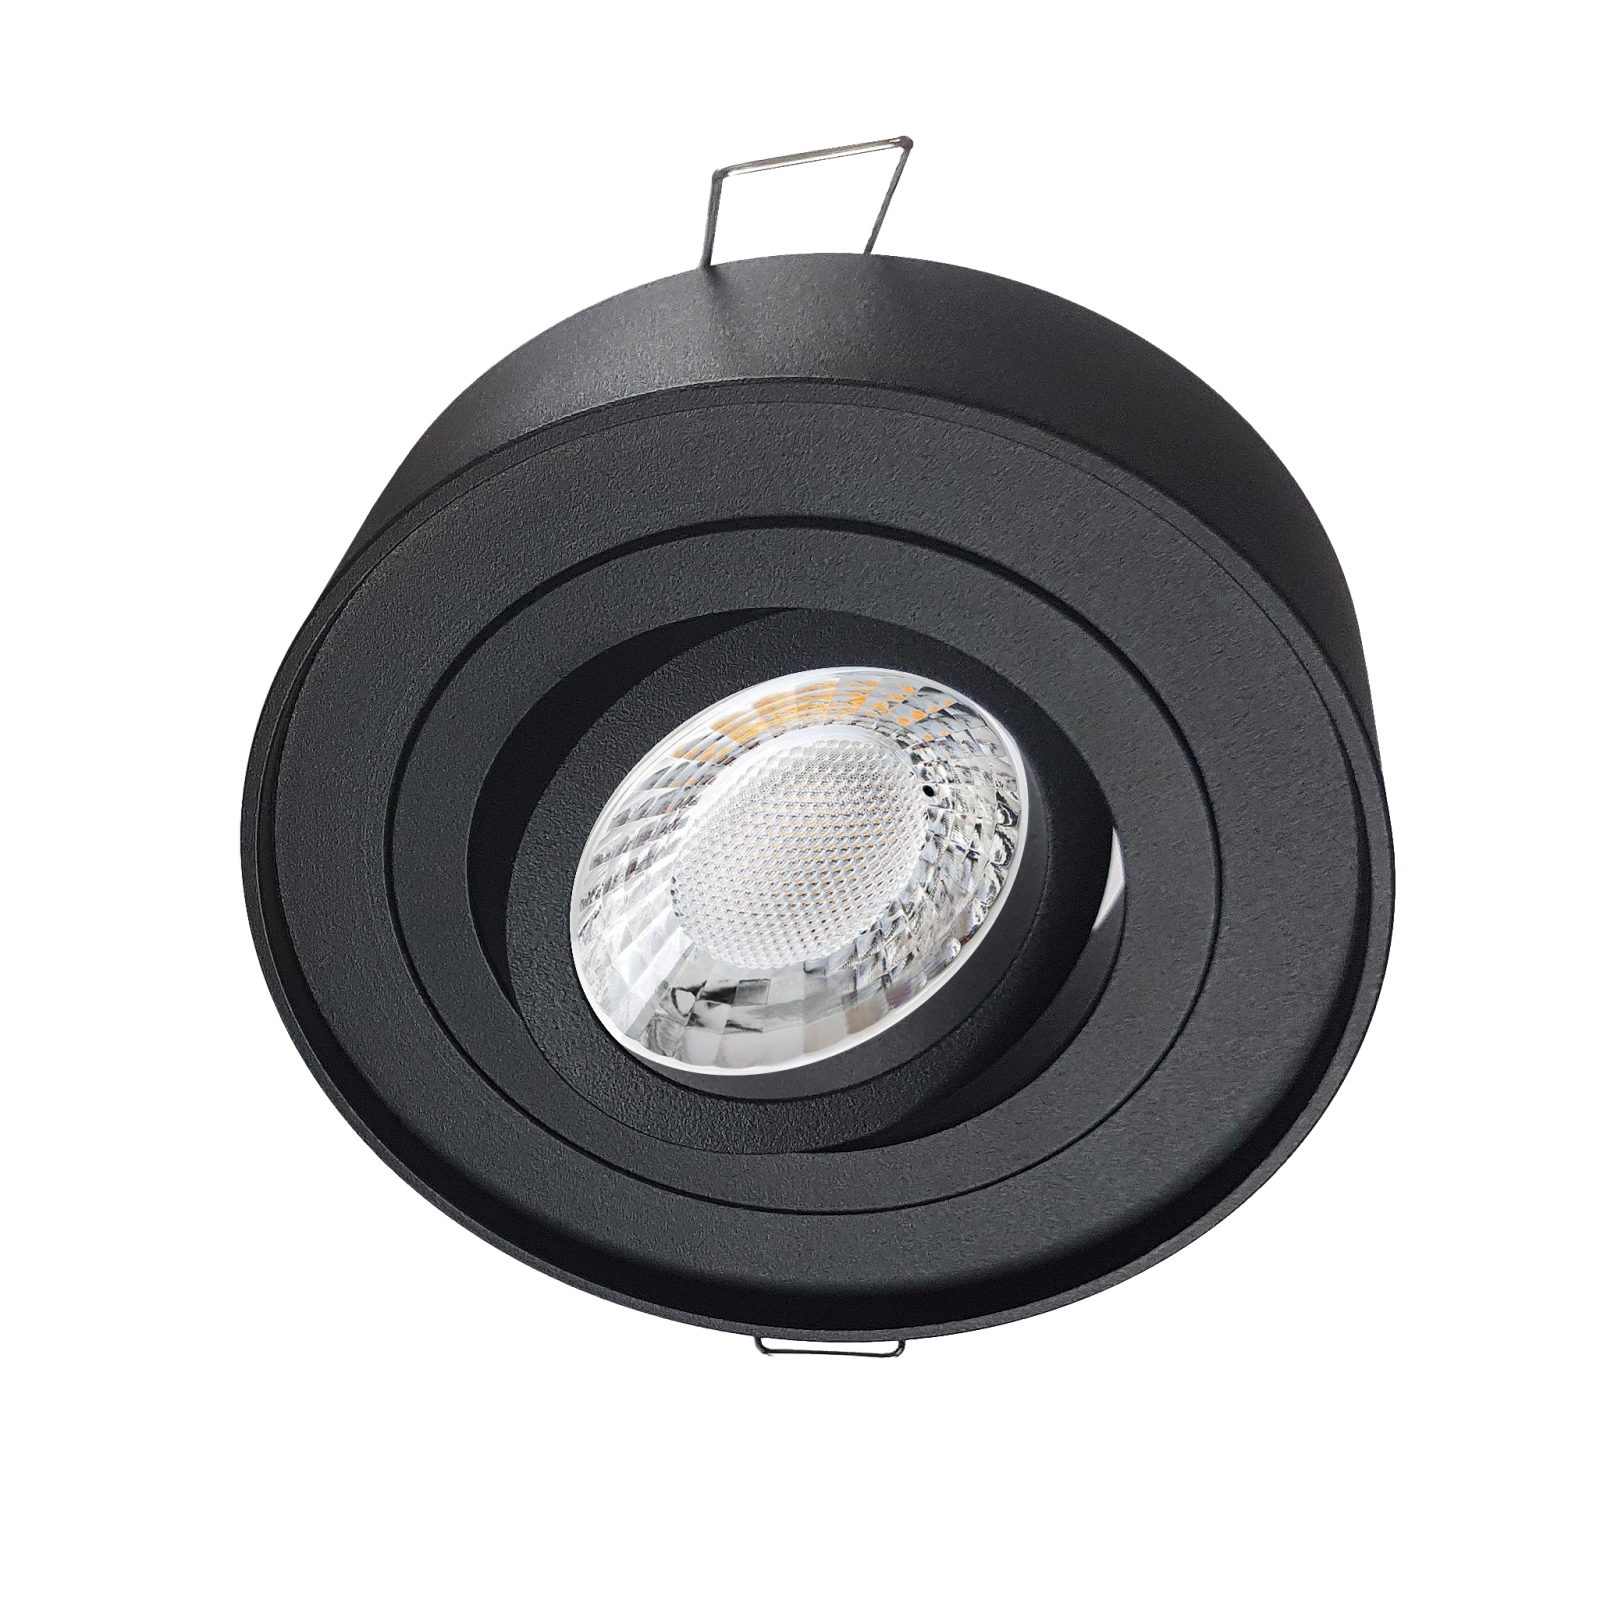 LED Aufbau Einbaustrahler schwarz pulverbeschichtet | Runder Einbauspot | 360° schwenkbar | Lochmaß Ø 85mm - 90mm | geringe Einbautiefe 38mm | GU10 230V 